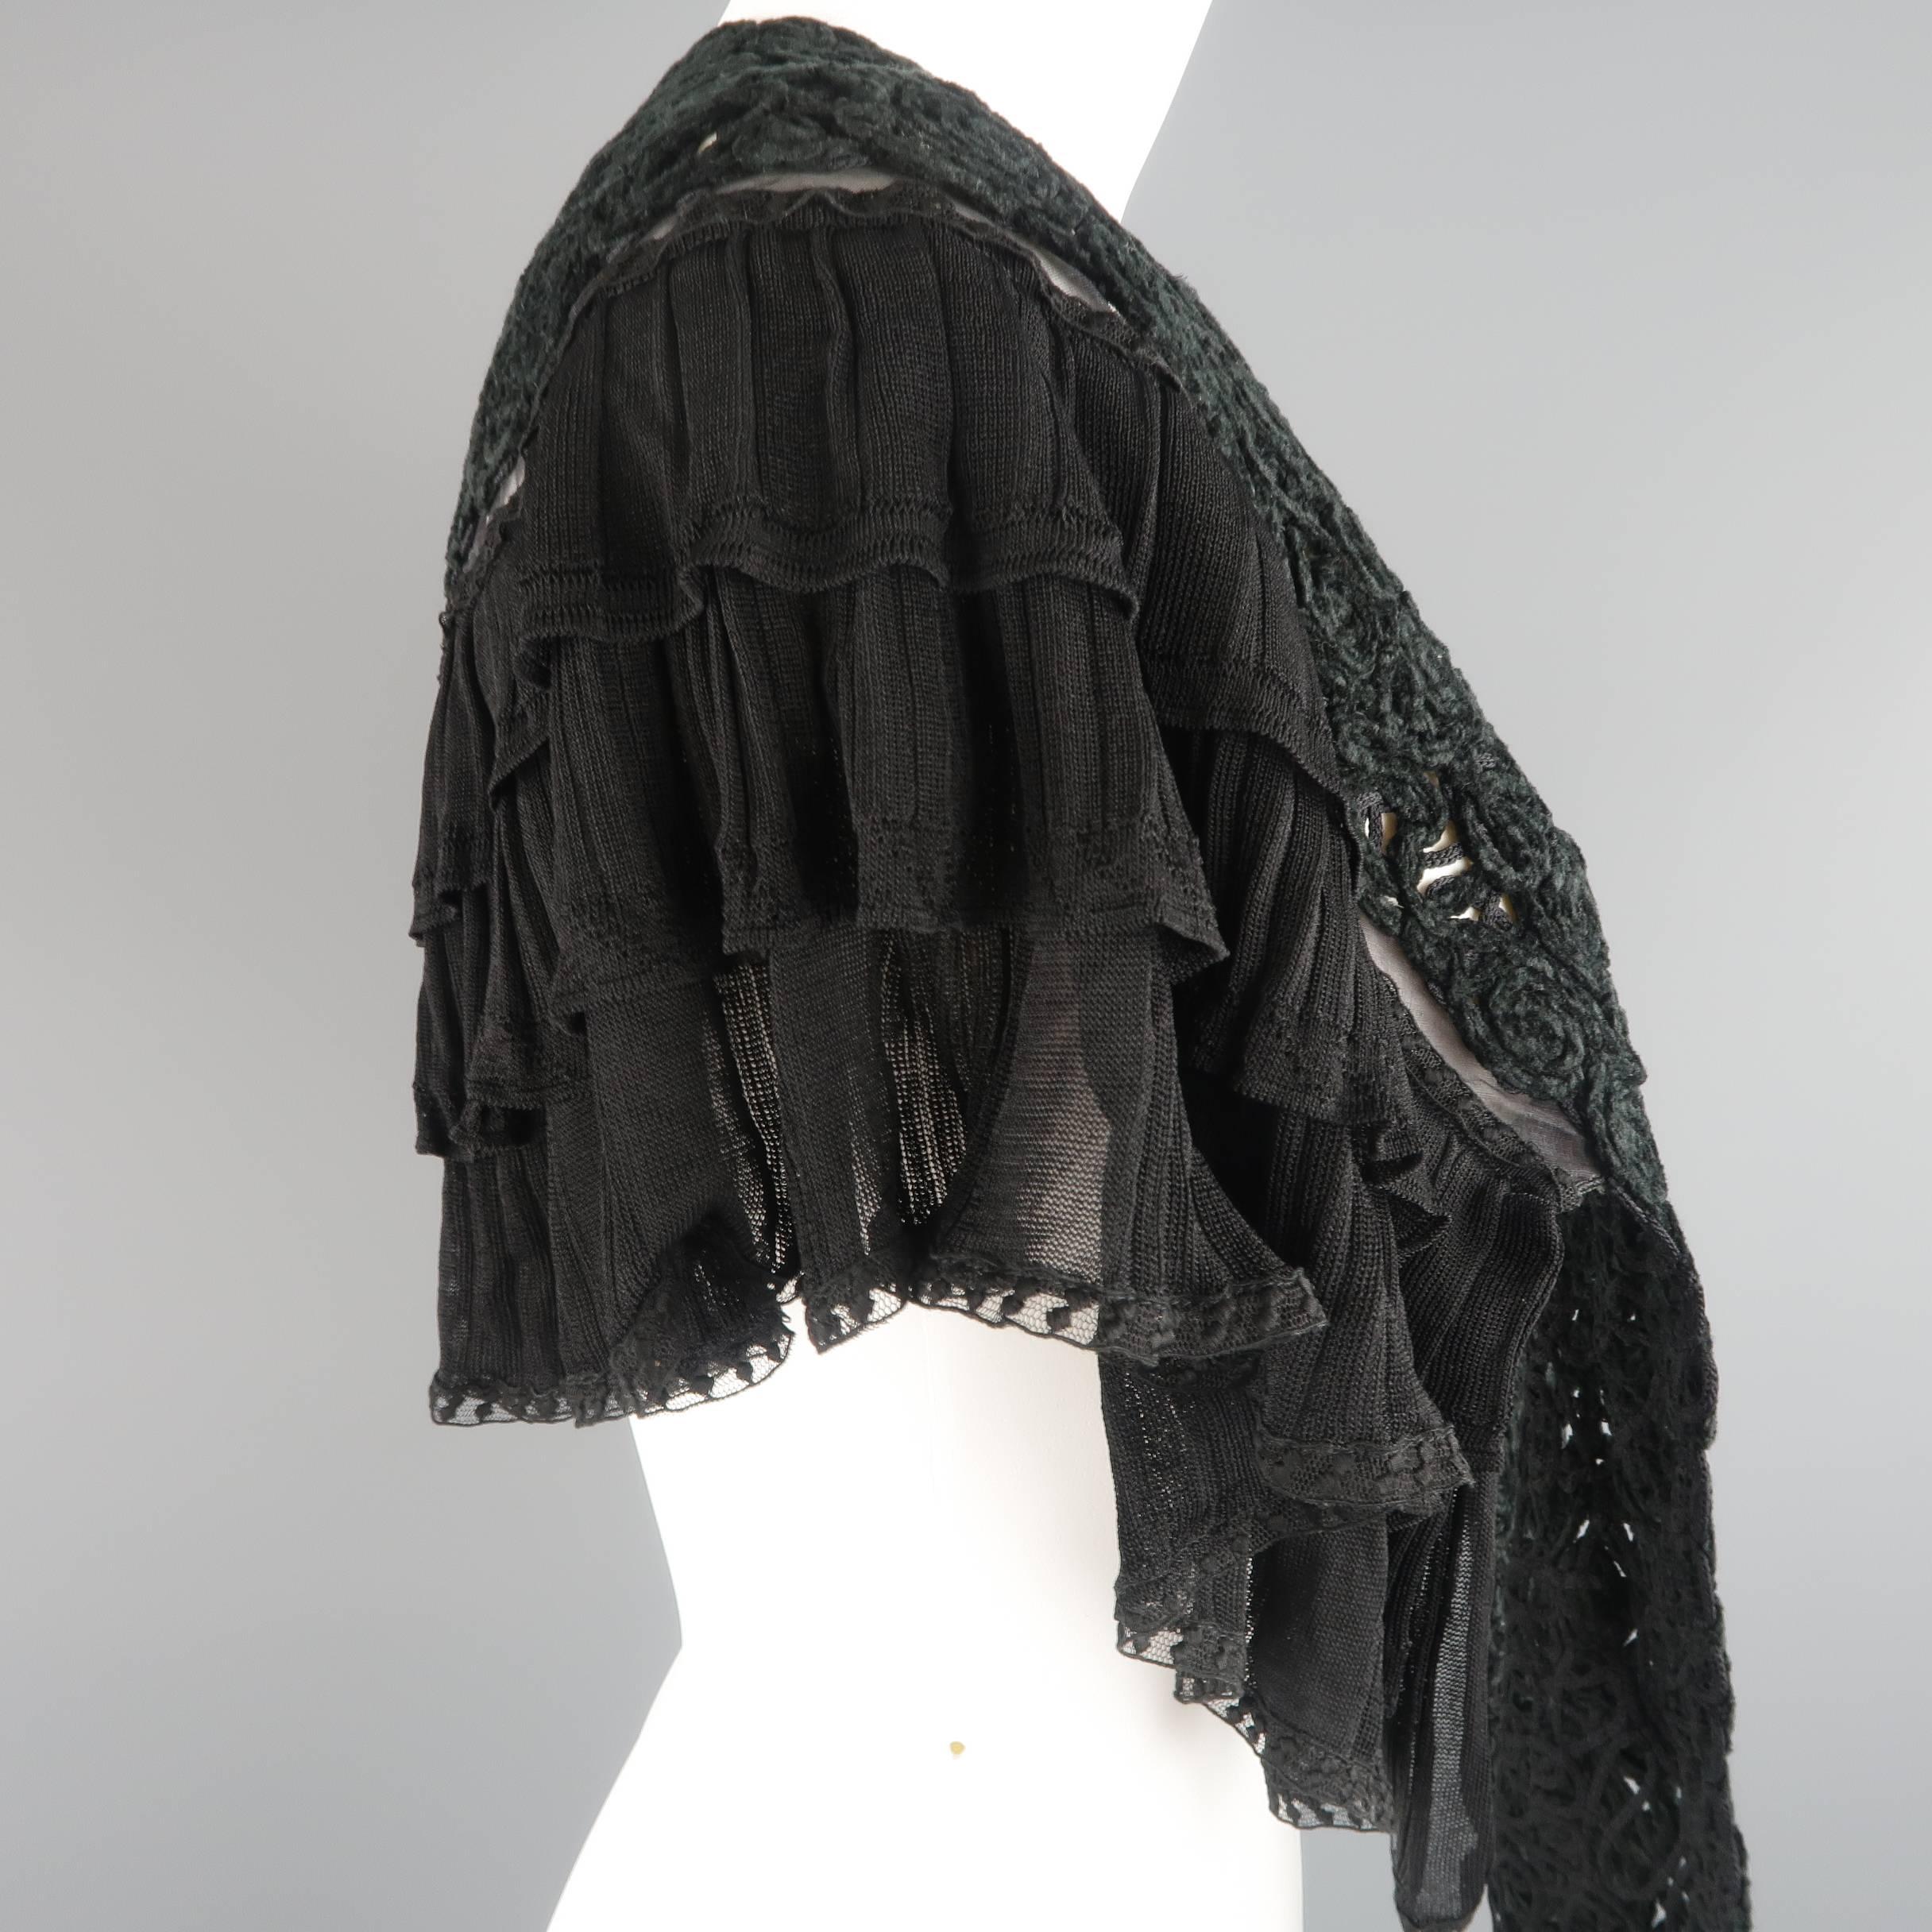 Chanel Cape - Black Velvet Rose Knit Ruffled Shoulder Ascot Collar Capelet 1